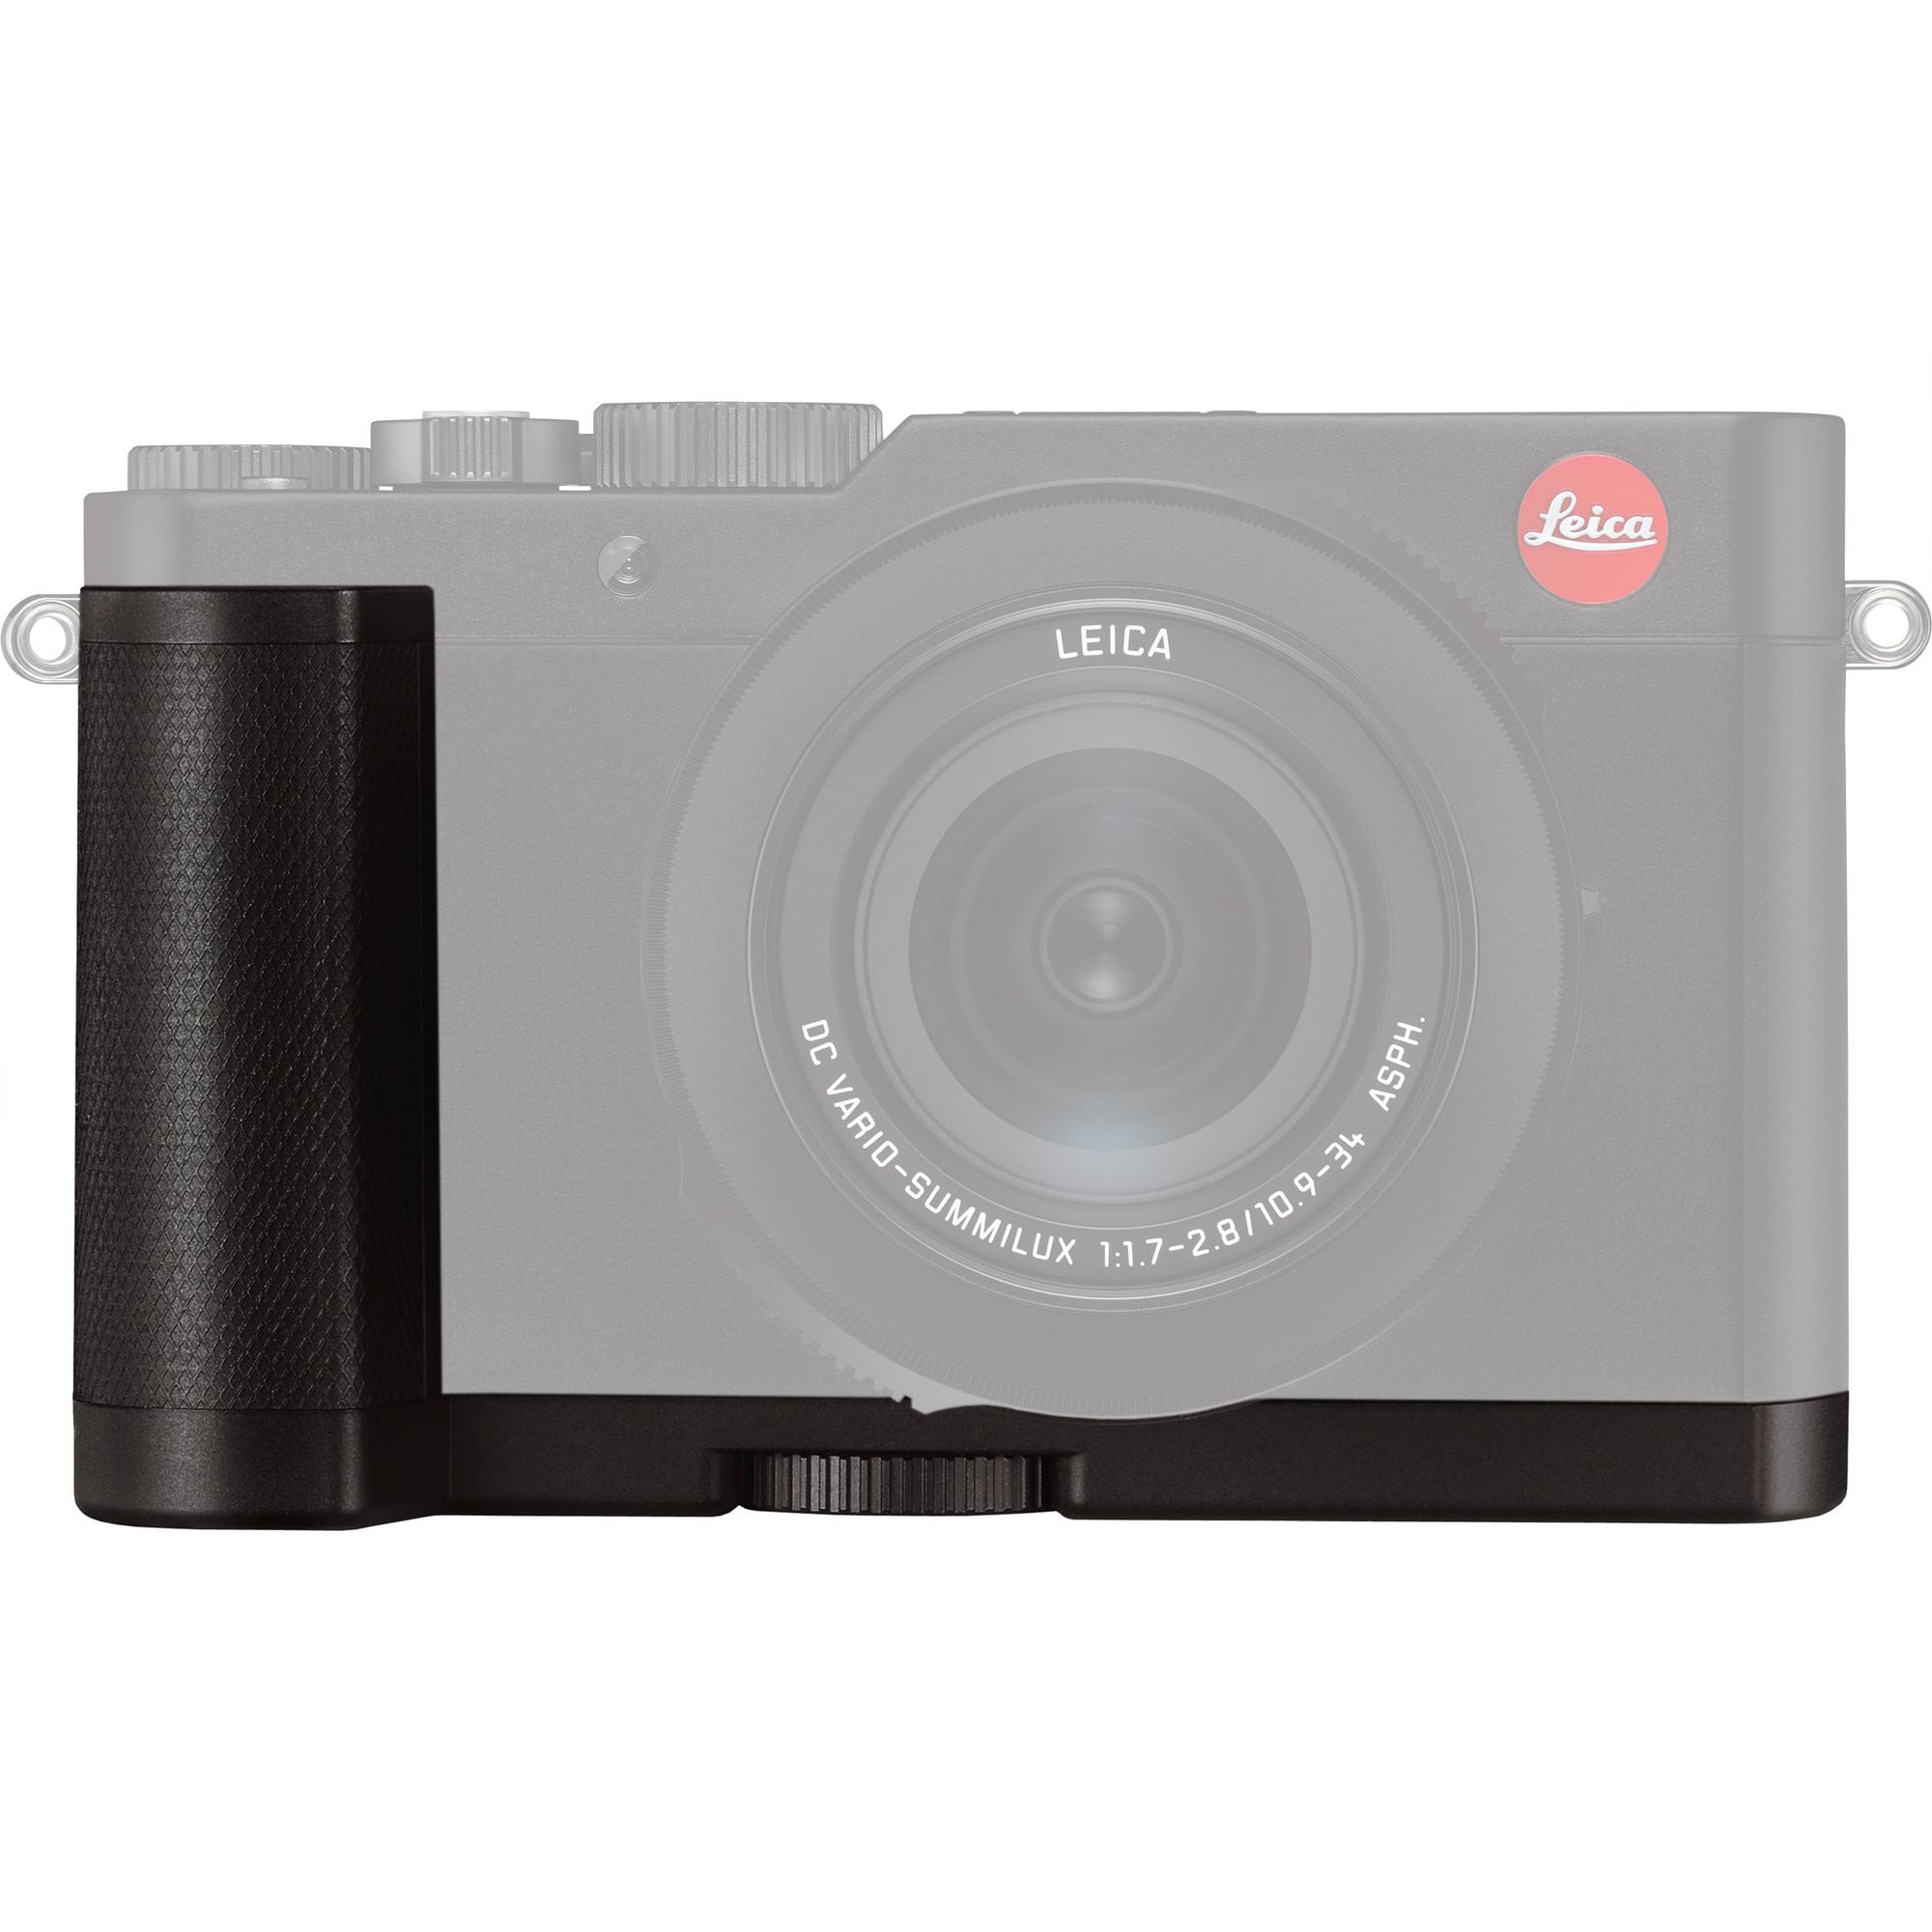 Leica Handgrepp till D-LUX 7